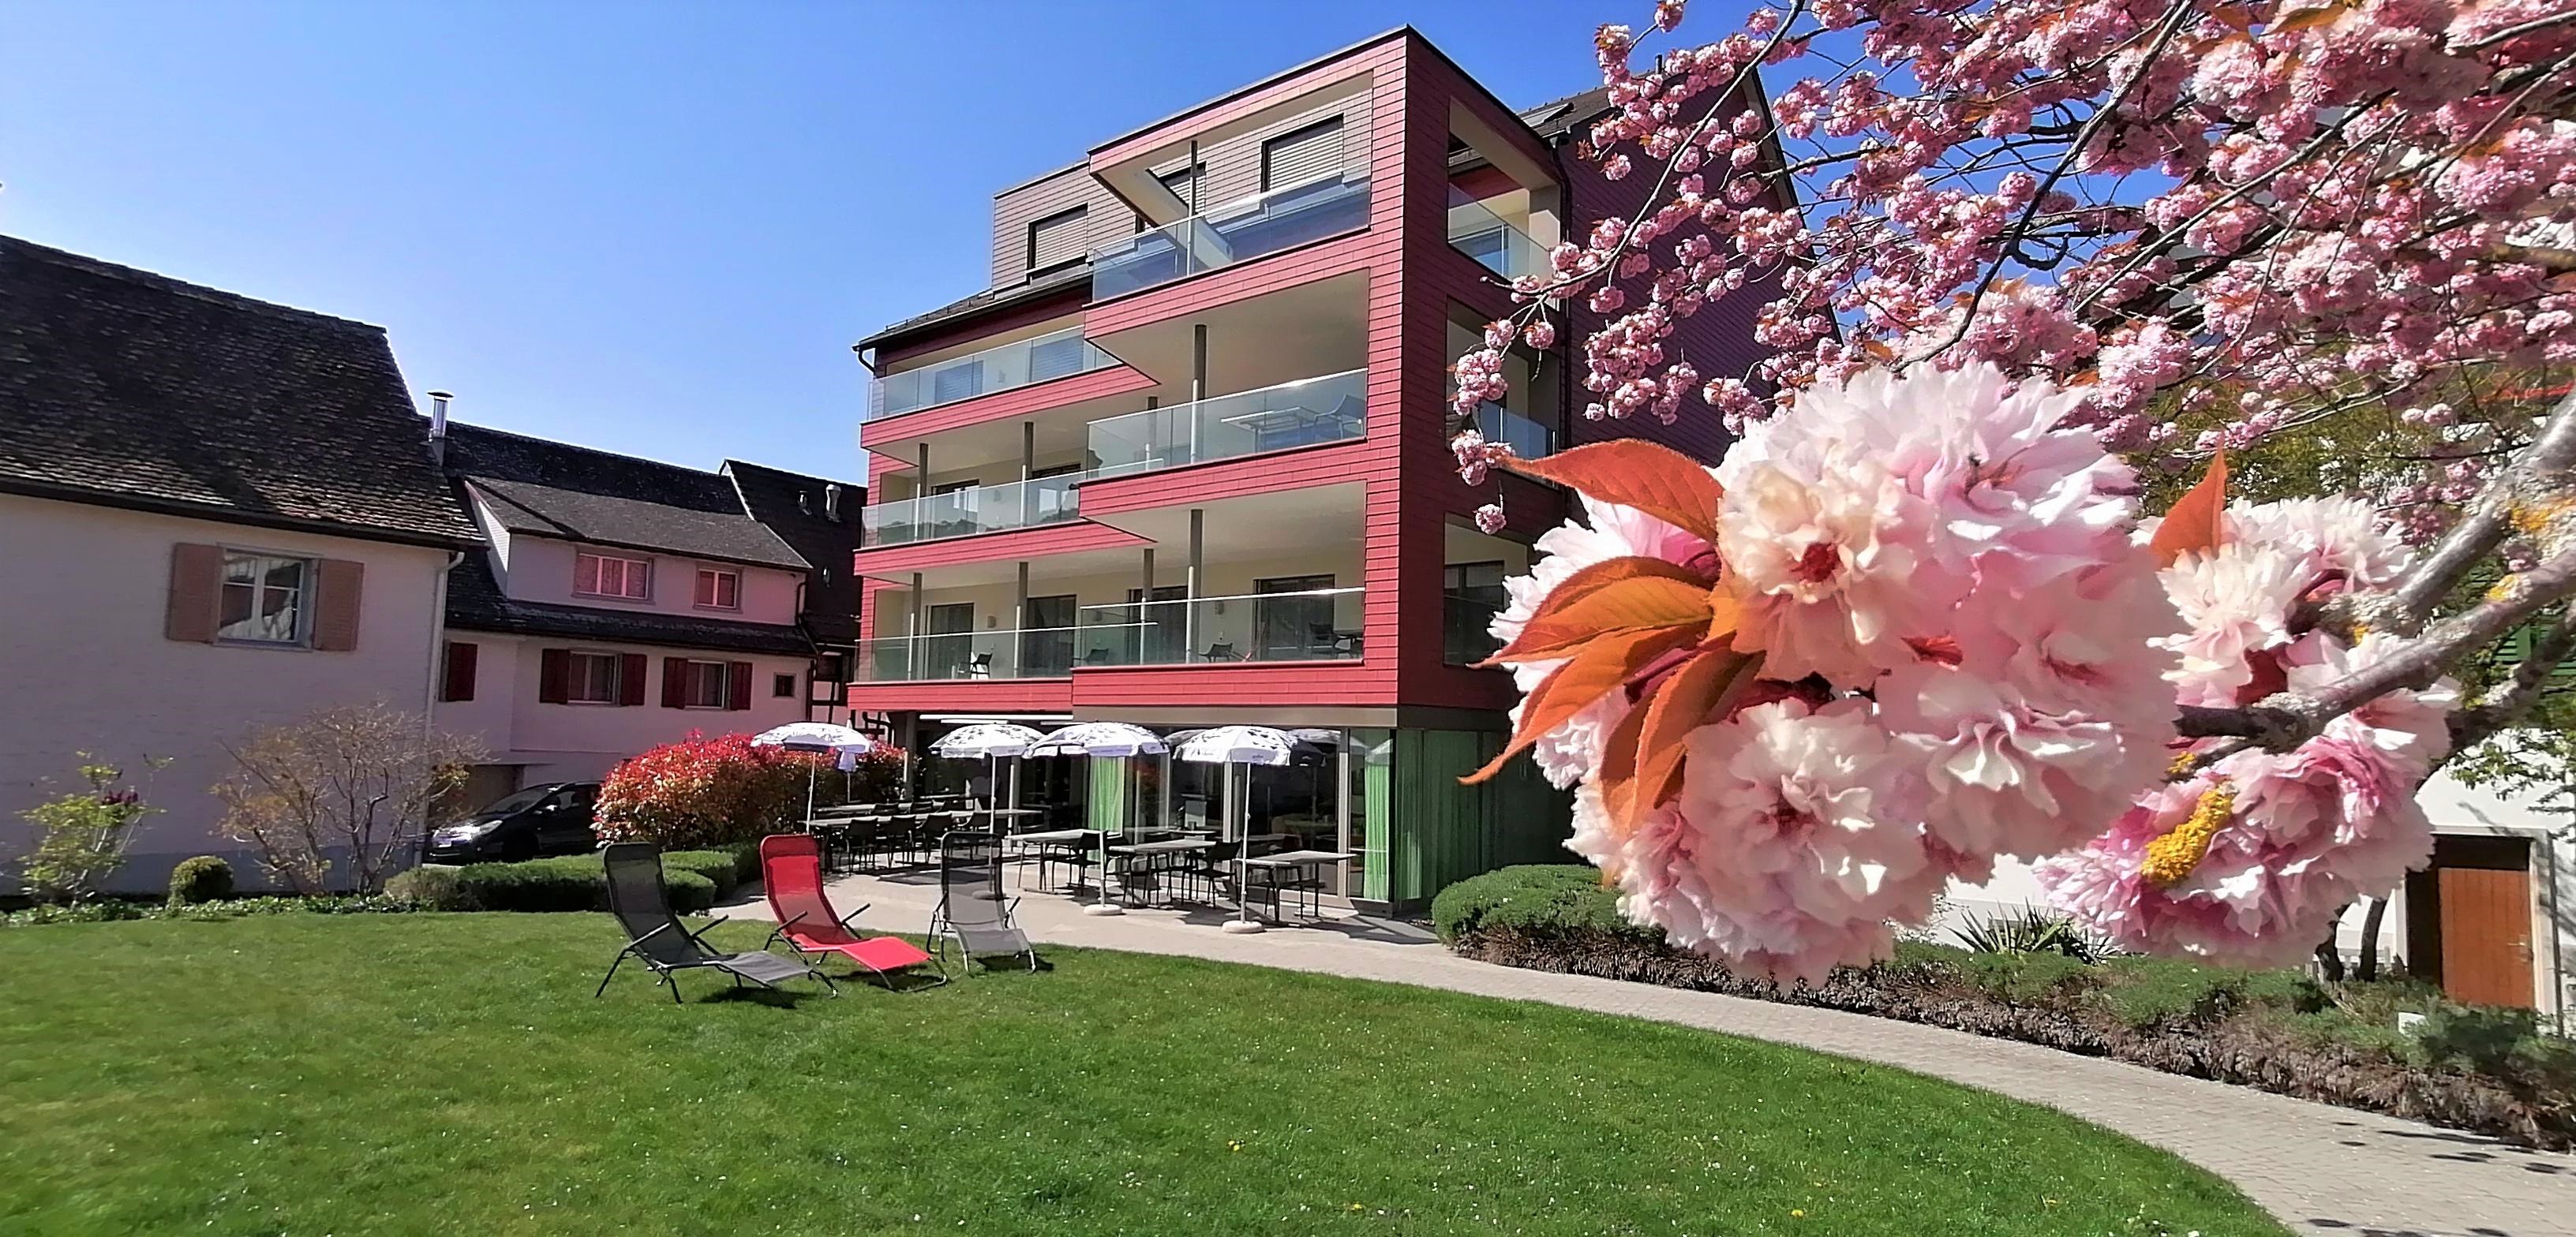 Hotel mit Gartenblick und Baum in voller Blütenpracht.